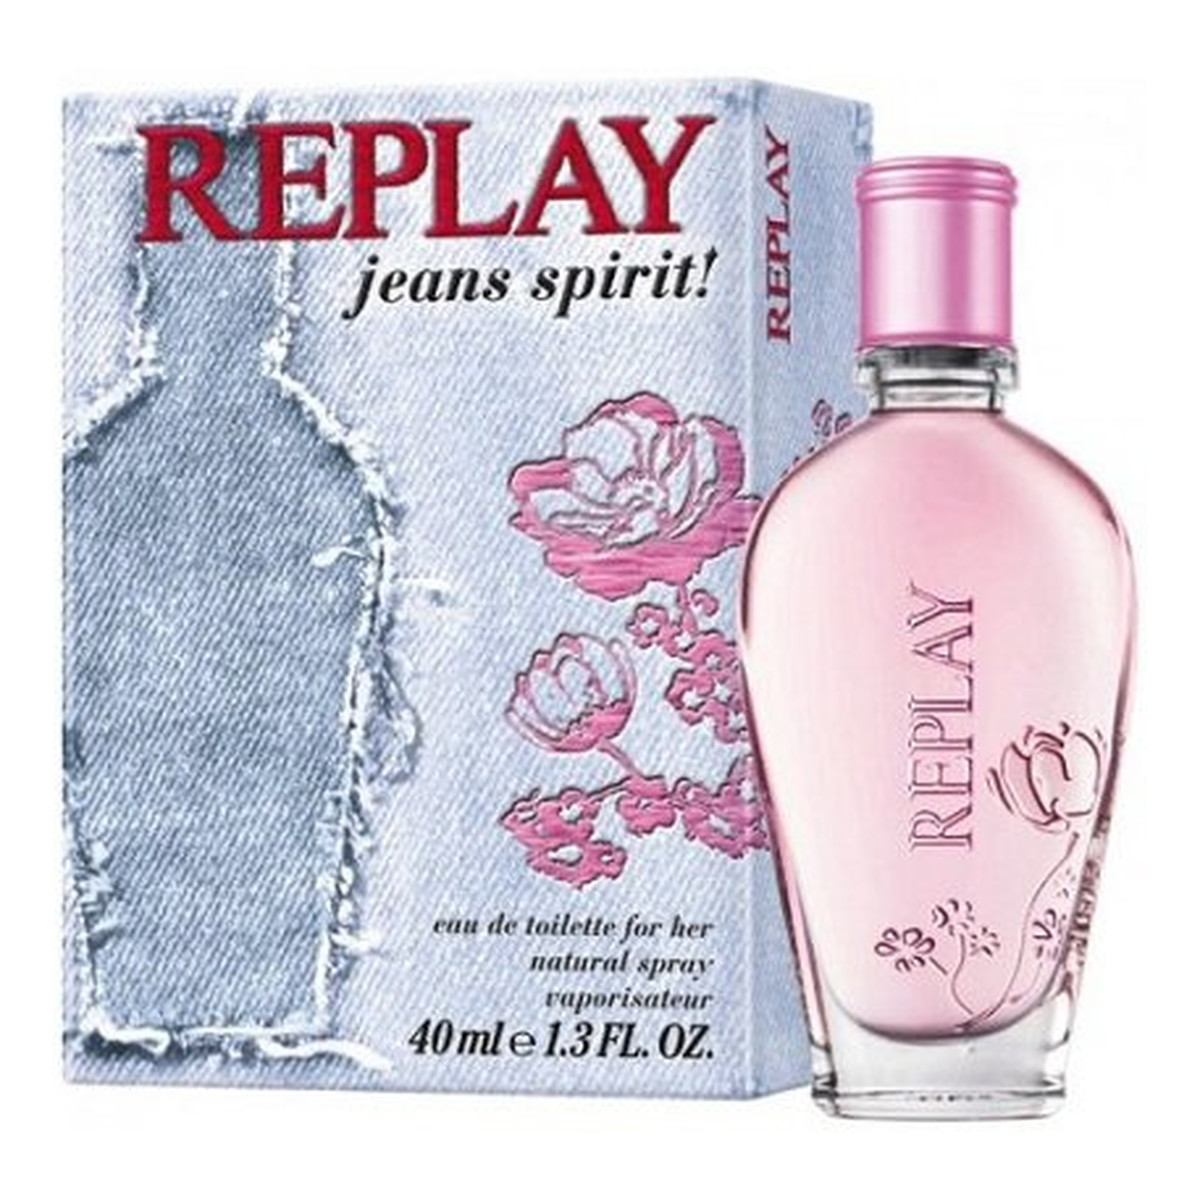 Replay Jeans Spirit Woda toaletowa spray 40ml